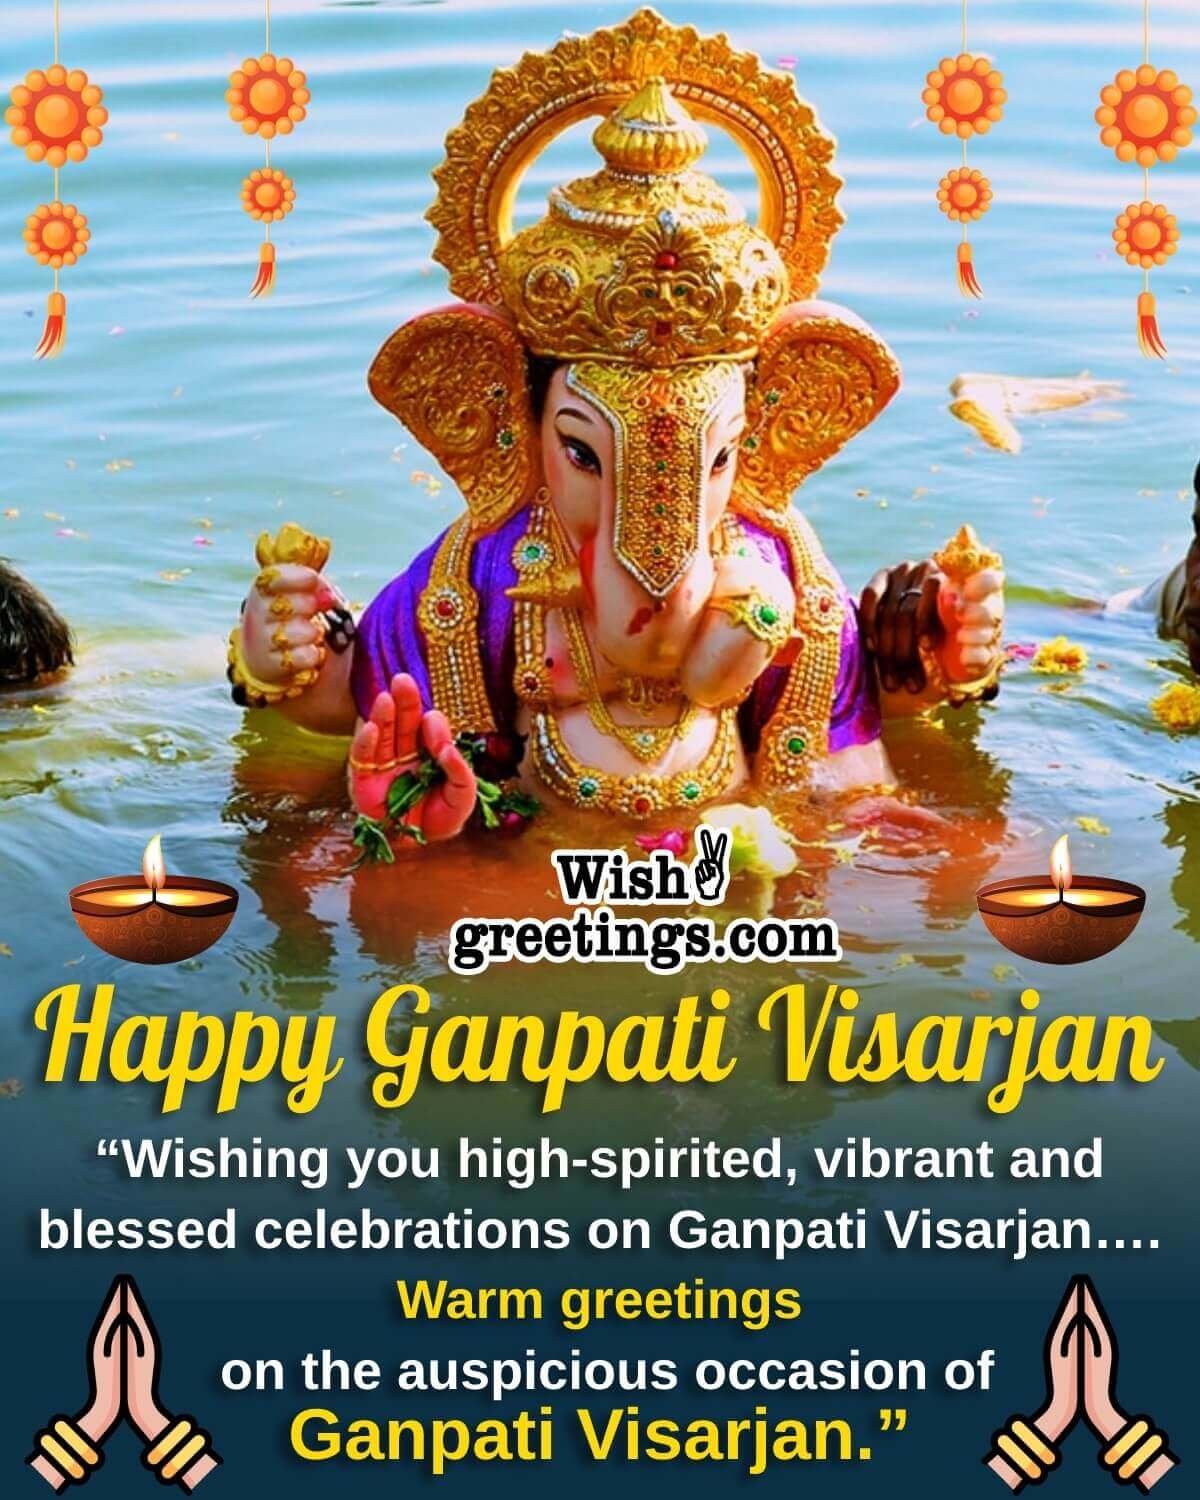 Wonderful Ganpati Visarjan Image